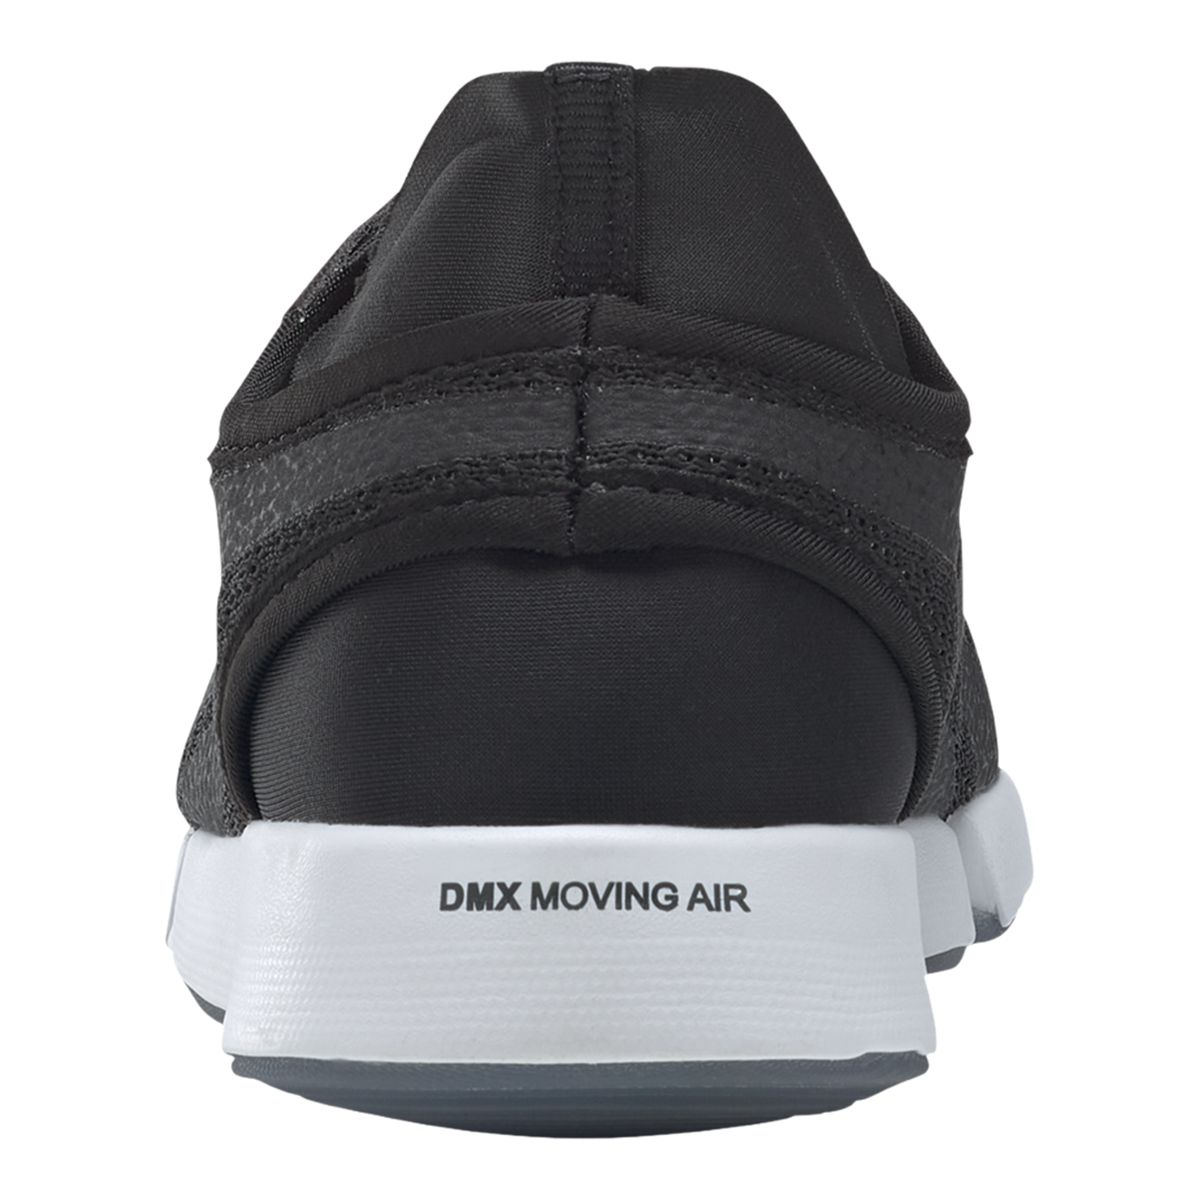 Reebok Women's DailyFit DMX 2.0 Walk Walking Shoes